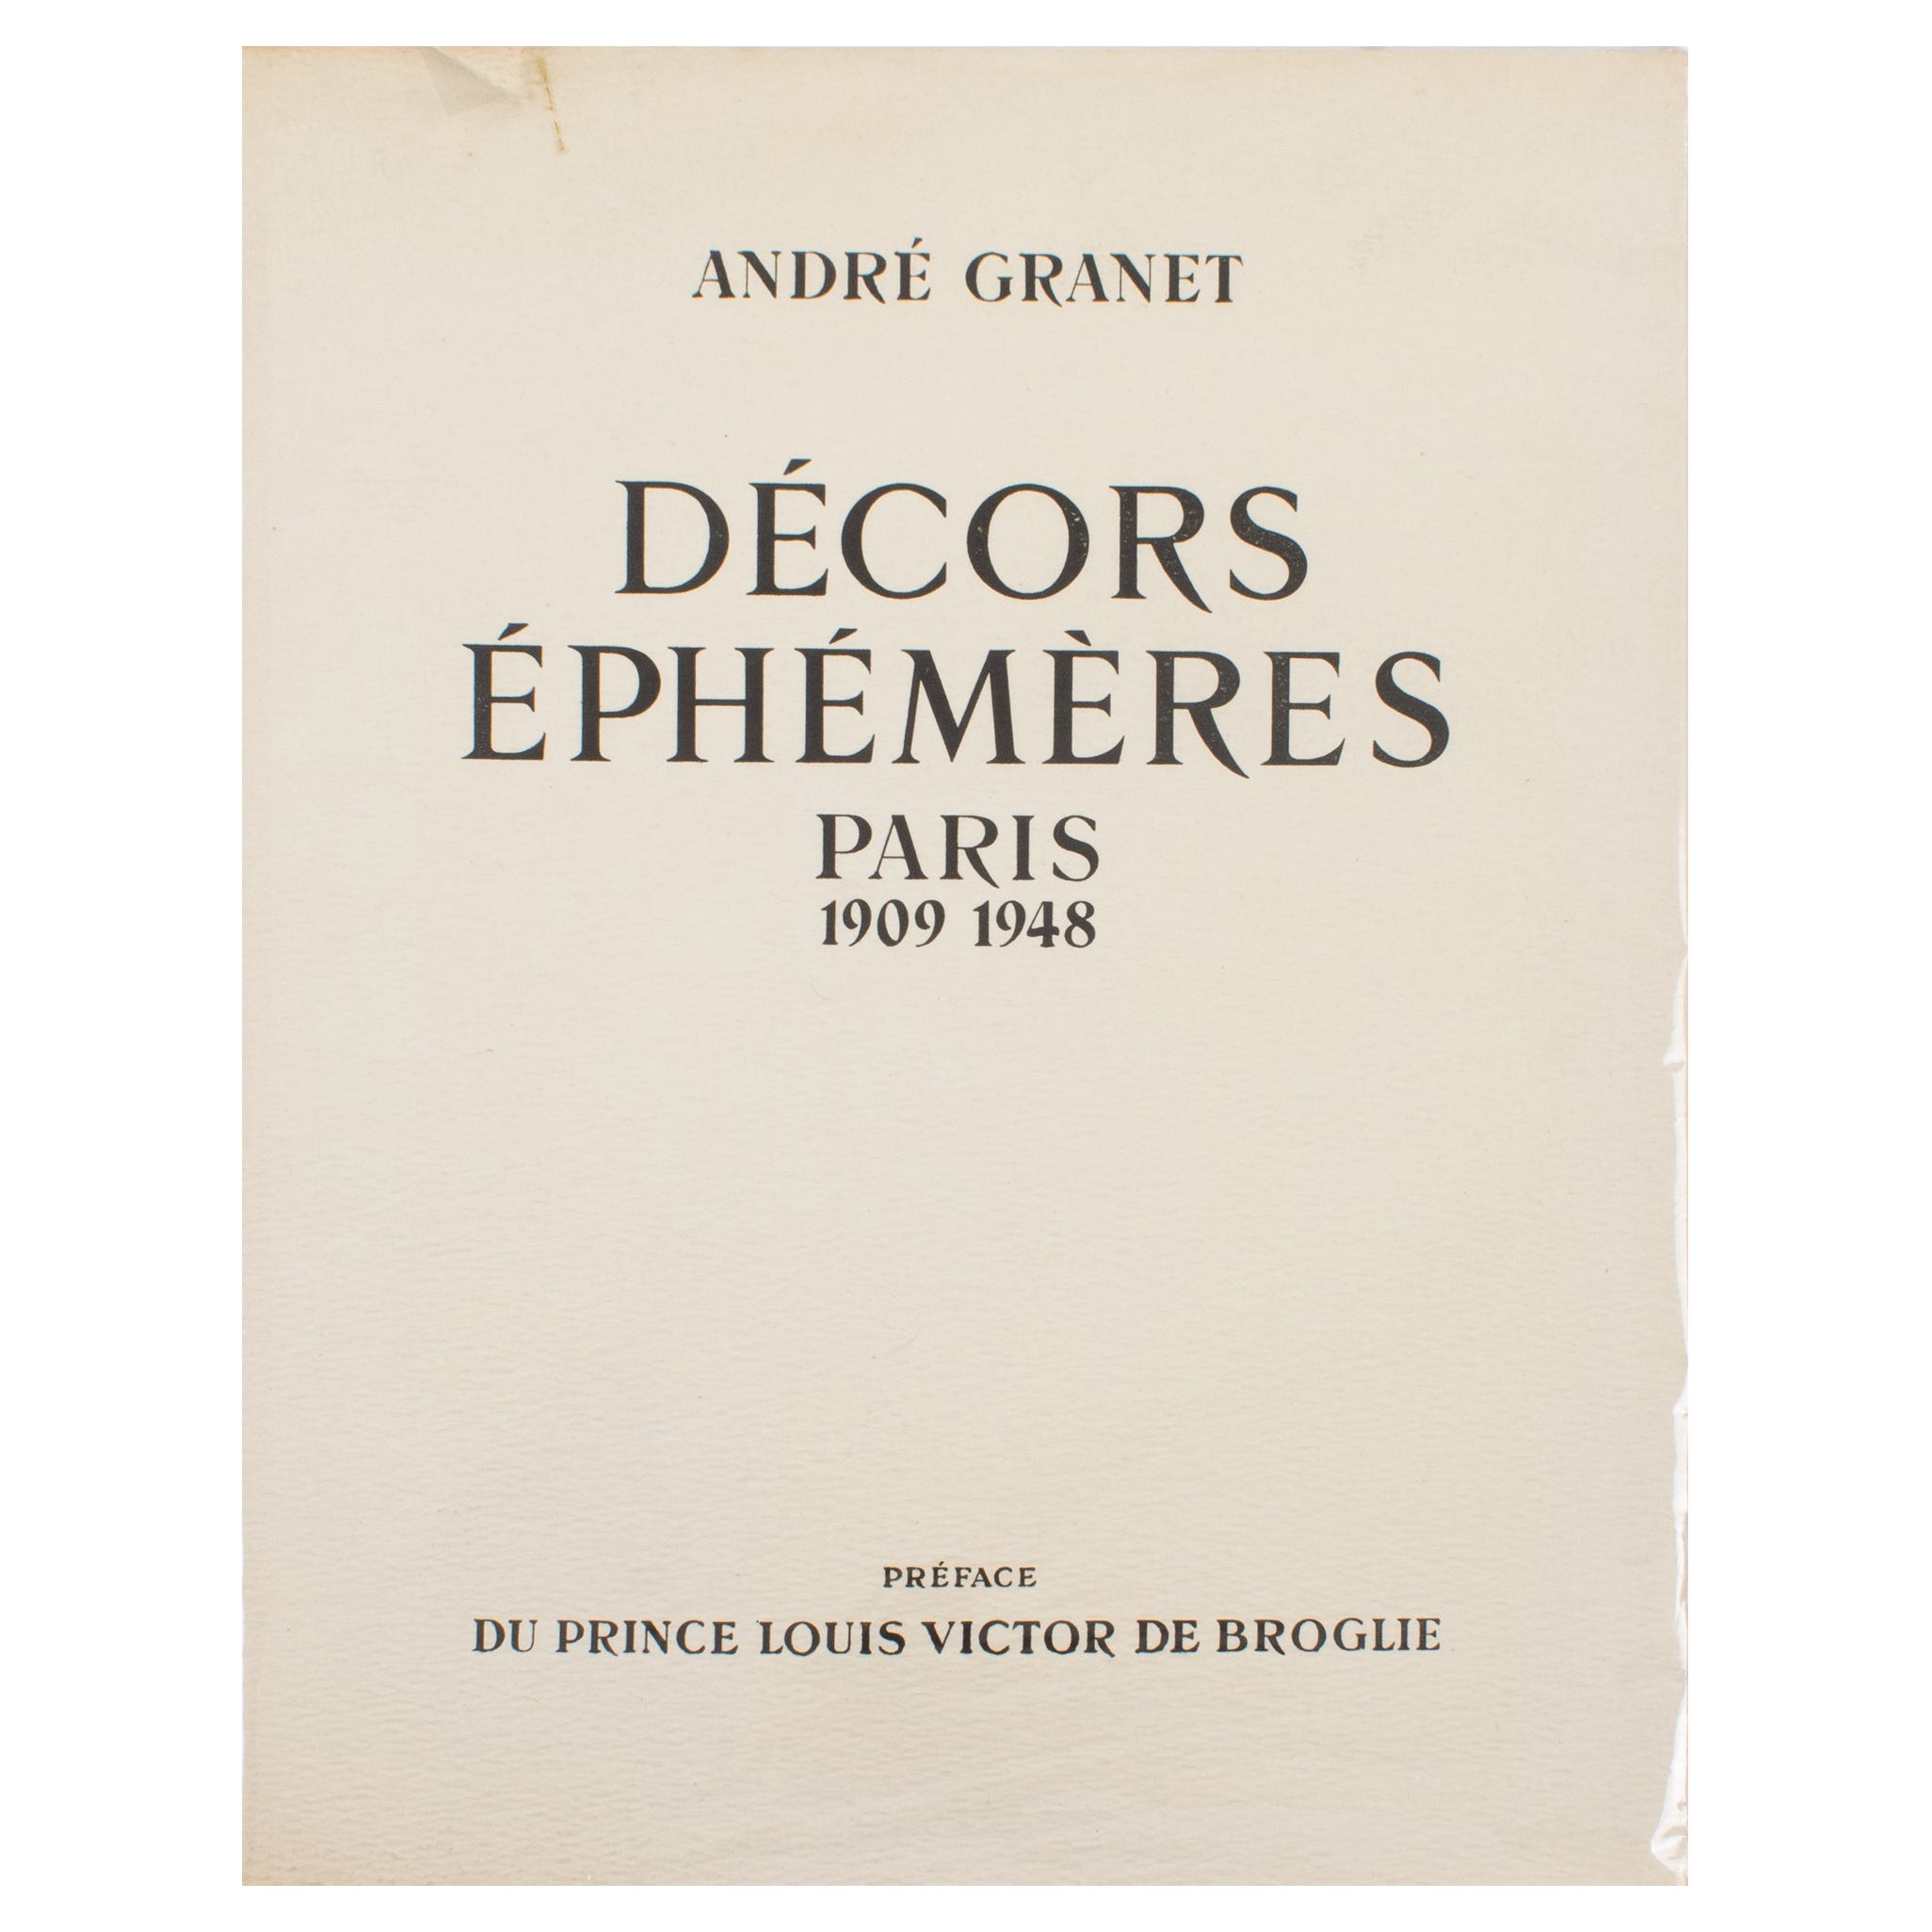 Paris Ephemeral Decorations, französisches Buch von André Granet, Originalausgabe von 1948